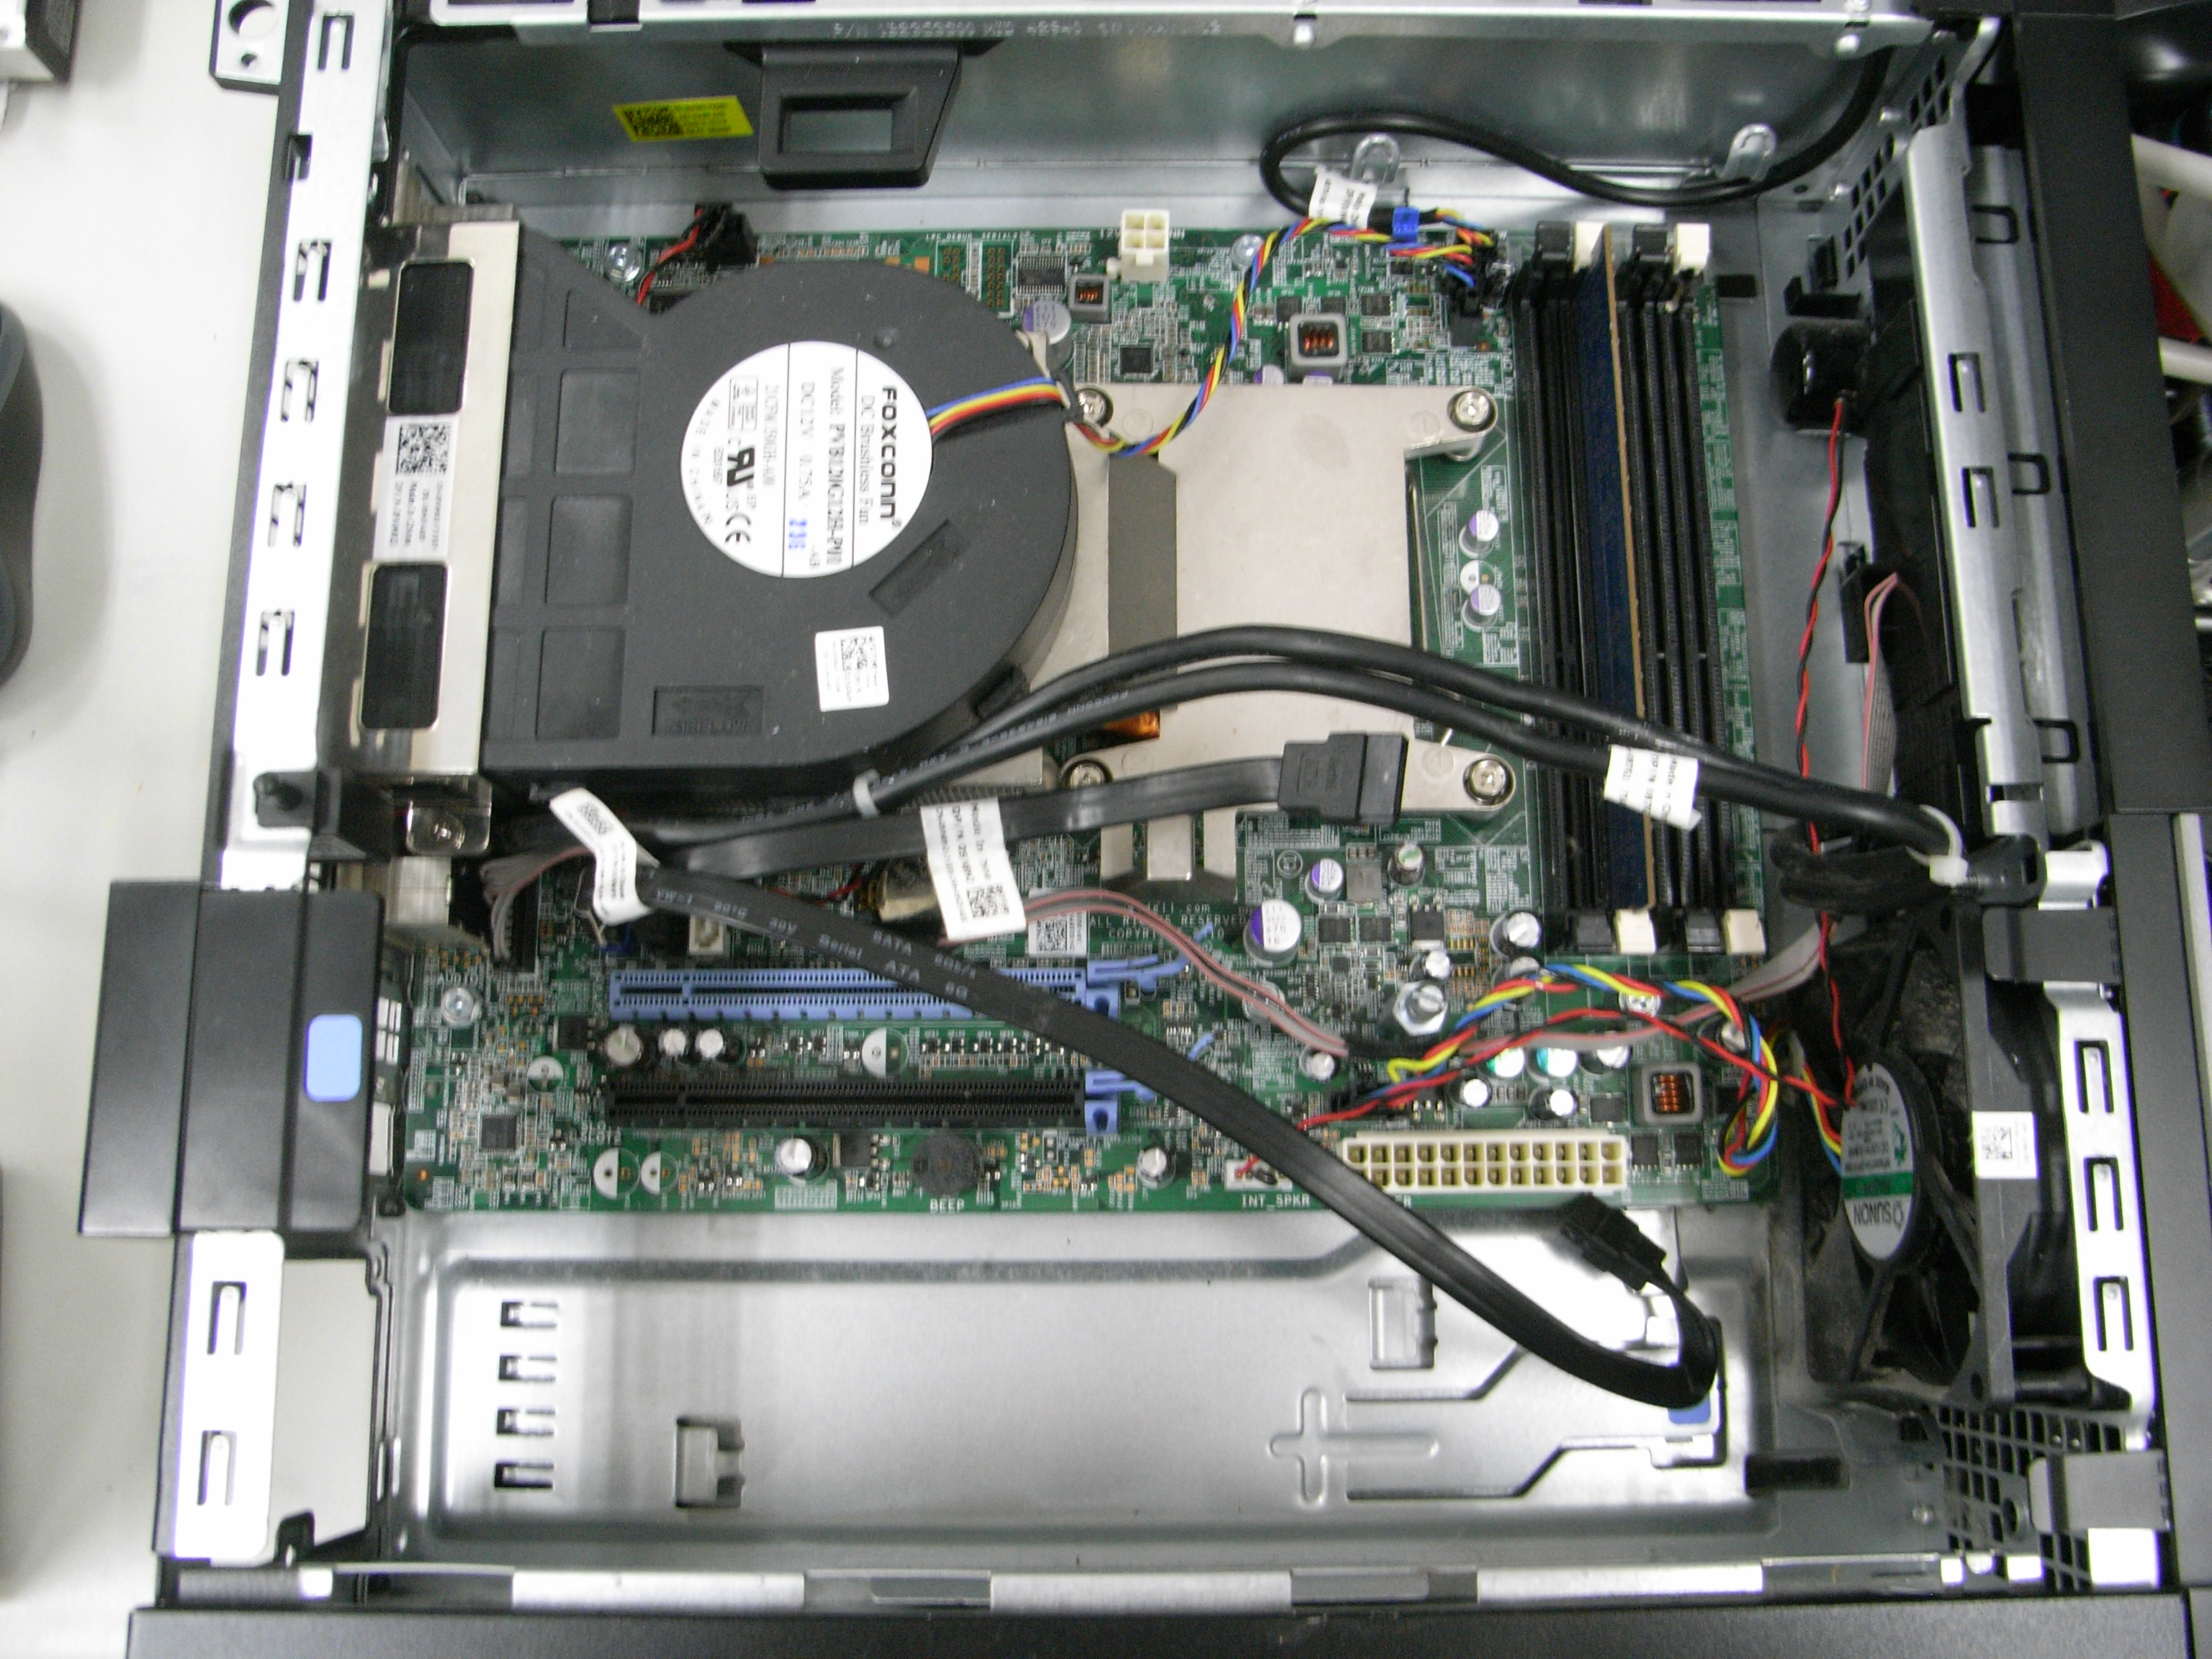 Dellの起動しない症状 マザーボードを交換しないでパソコン修理 仙台のパソコン修理専門店パソコンお直し隊ブログ